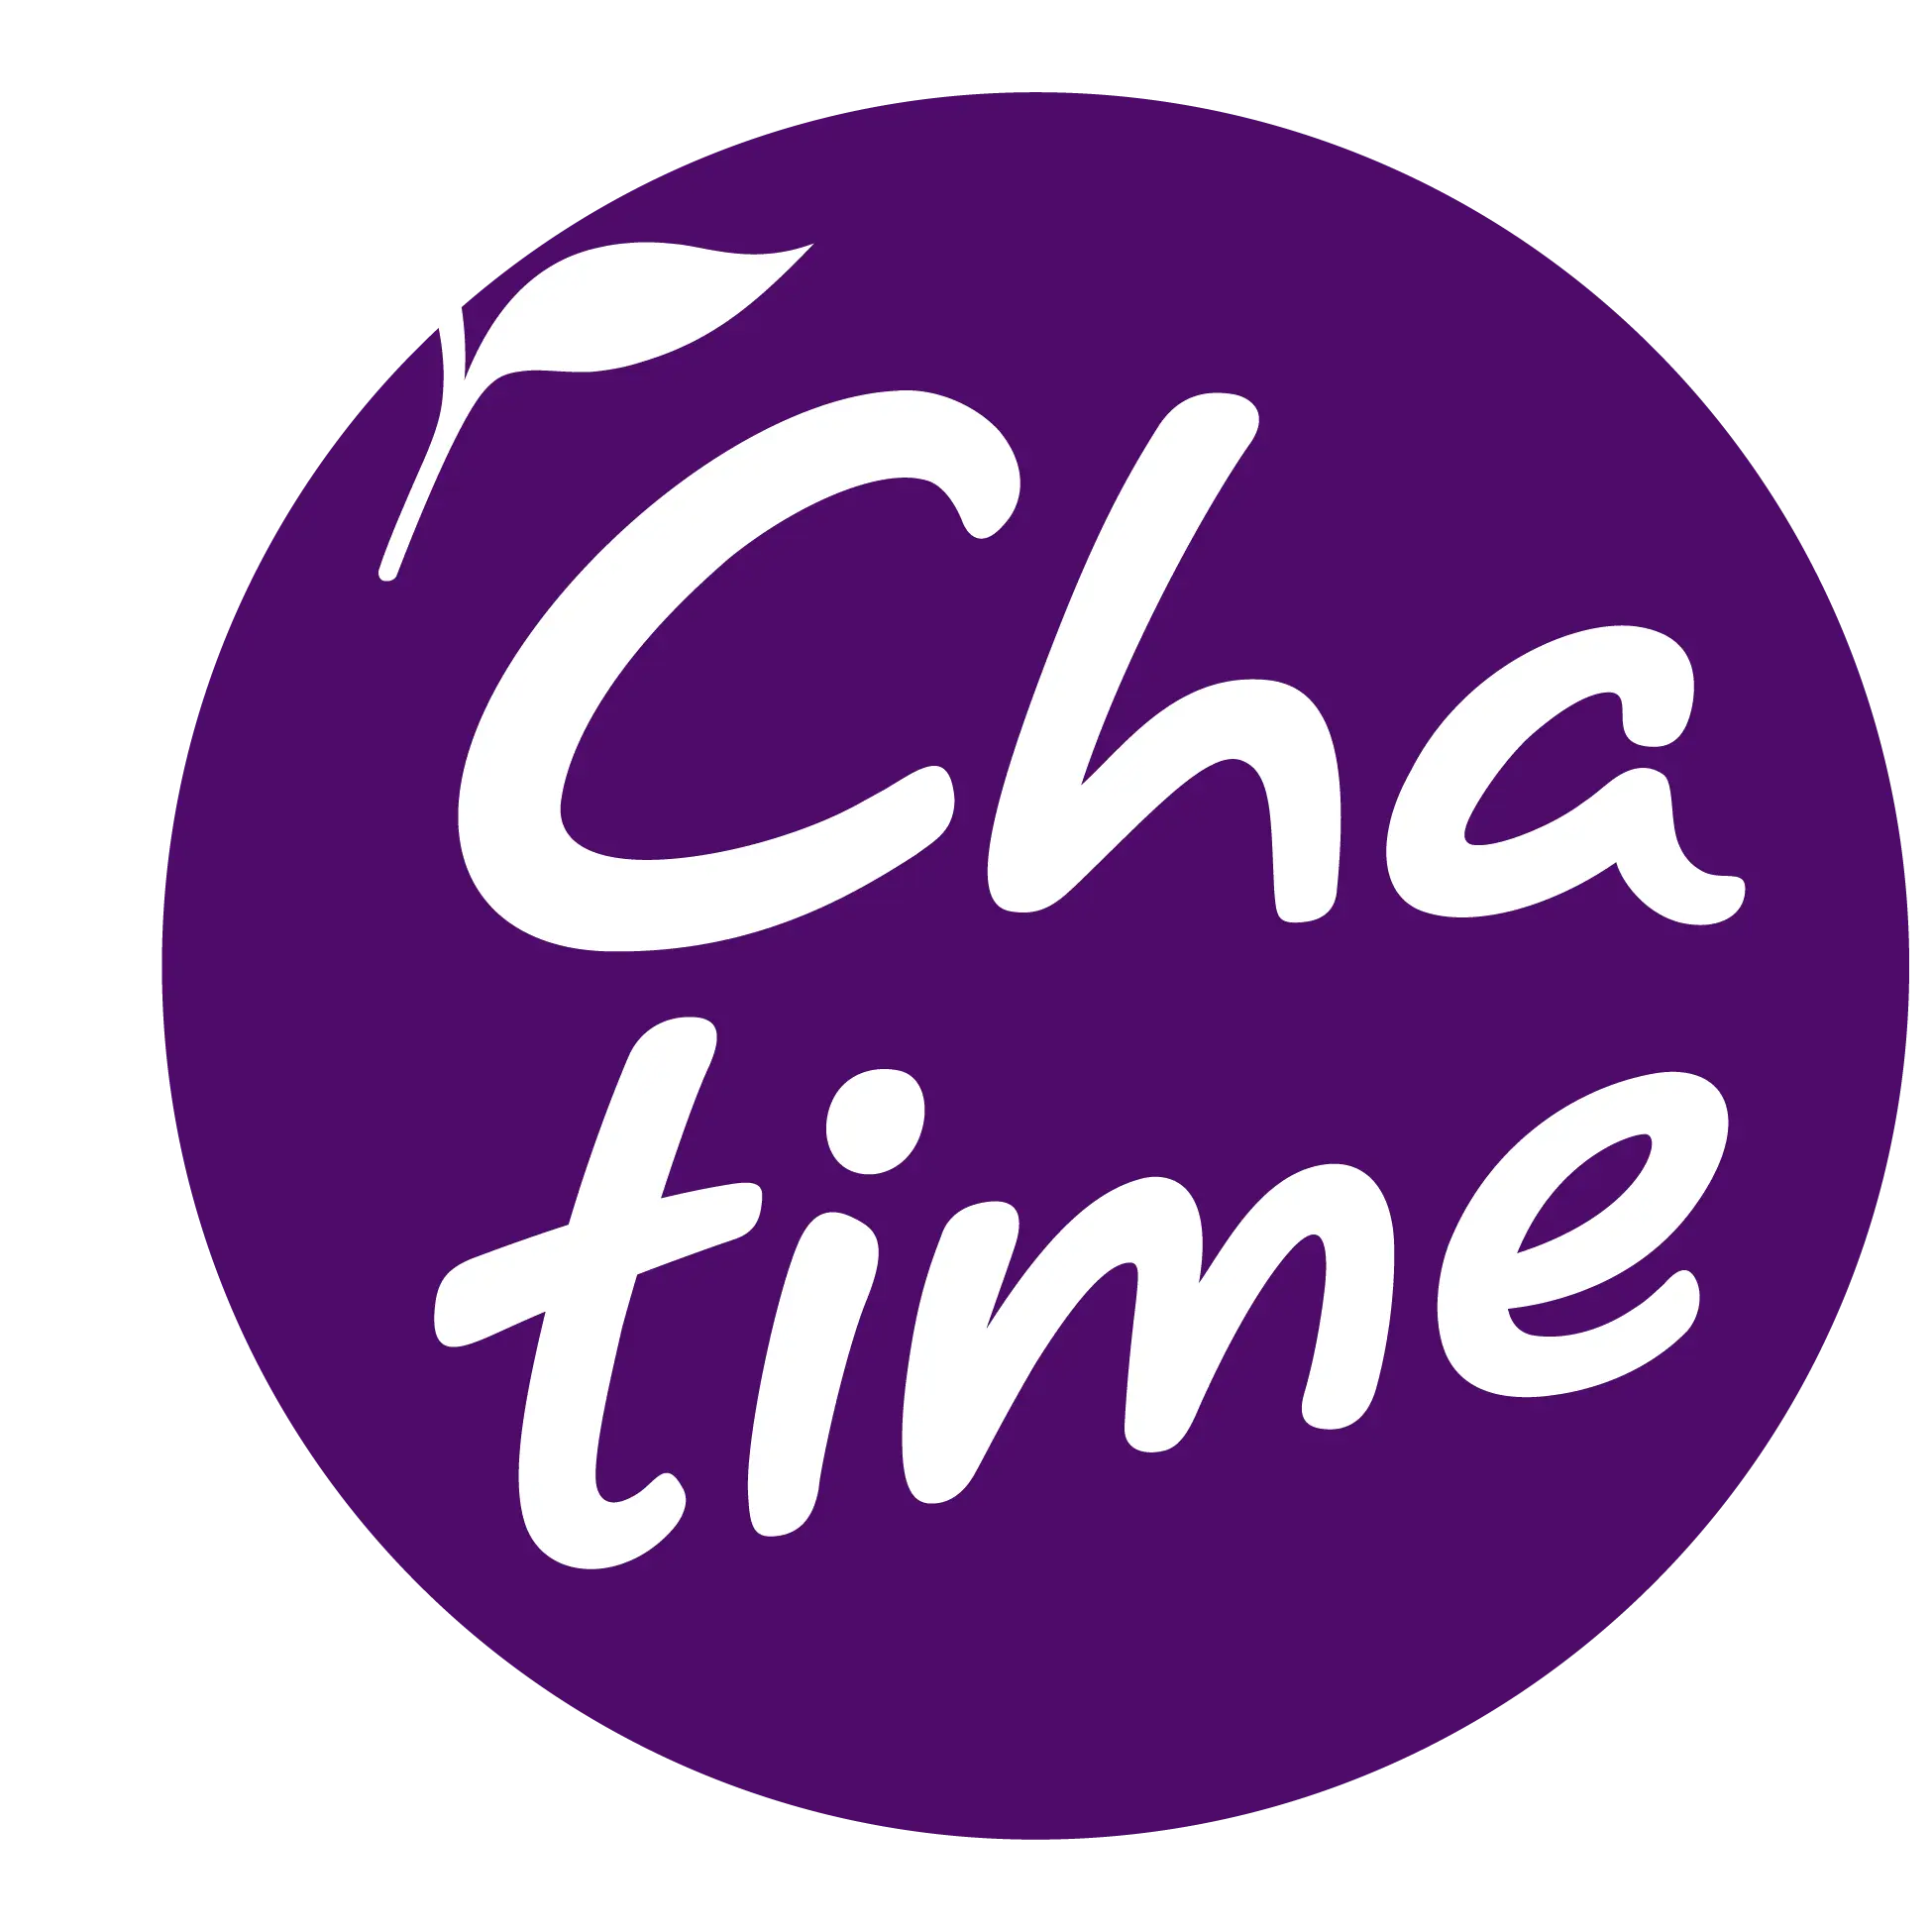 Chatime Logo